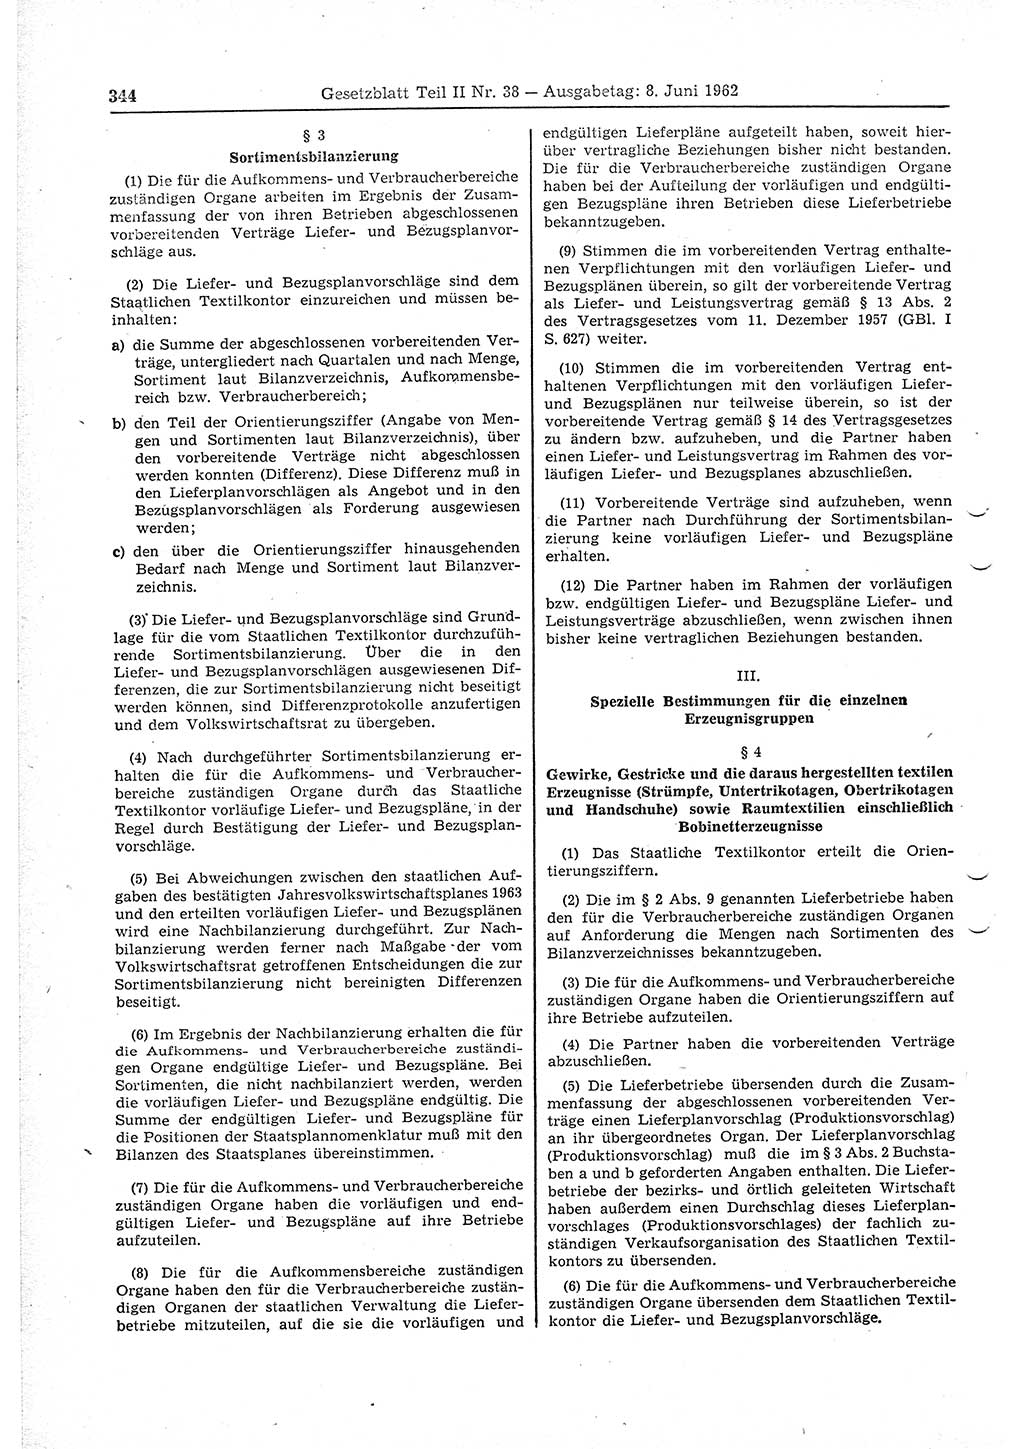 Gesetzblatt (GBl.) der Deutschen Demokratischen Republik (DDR) Teil ⅠⅠ 1962, Seite 344 (GBl. DDR ⅠⅠ 1962, S. 344)